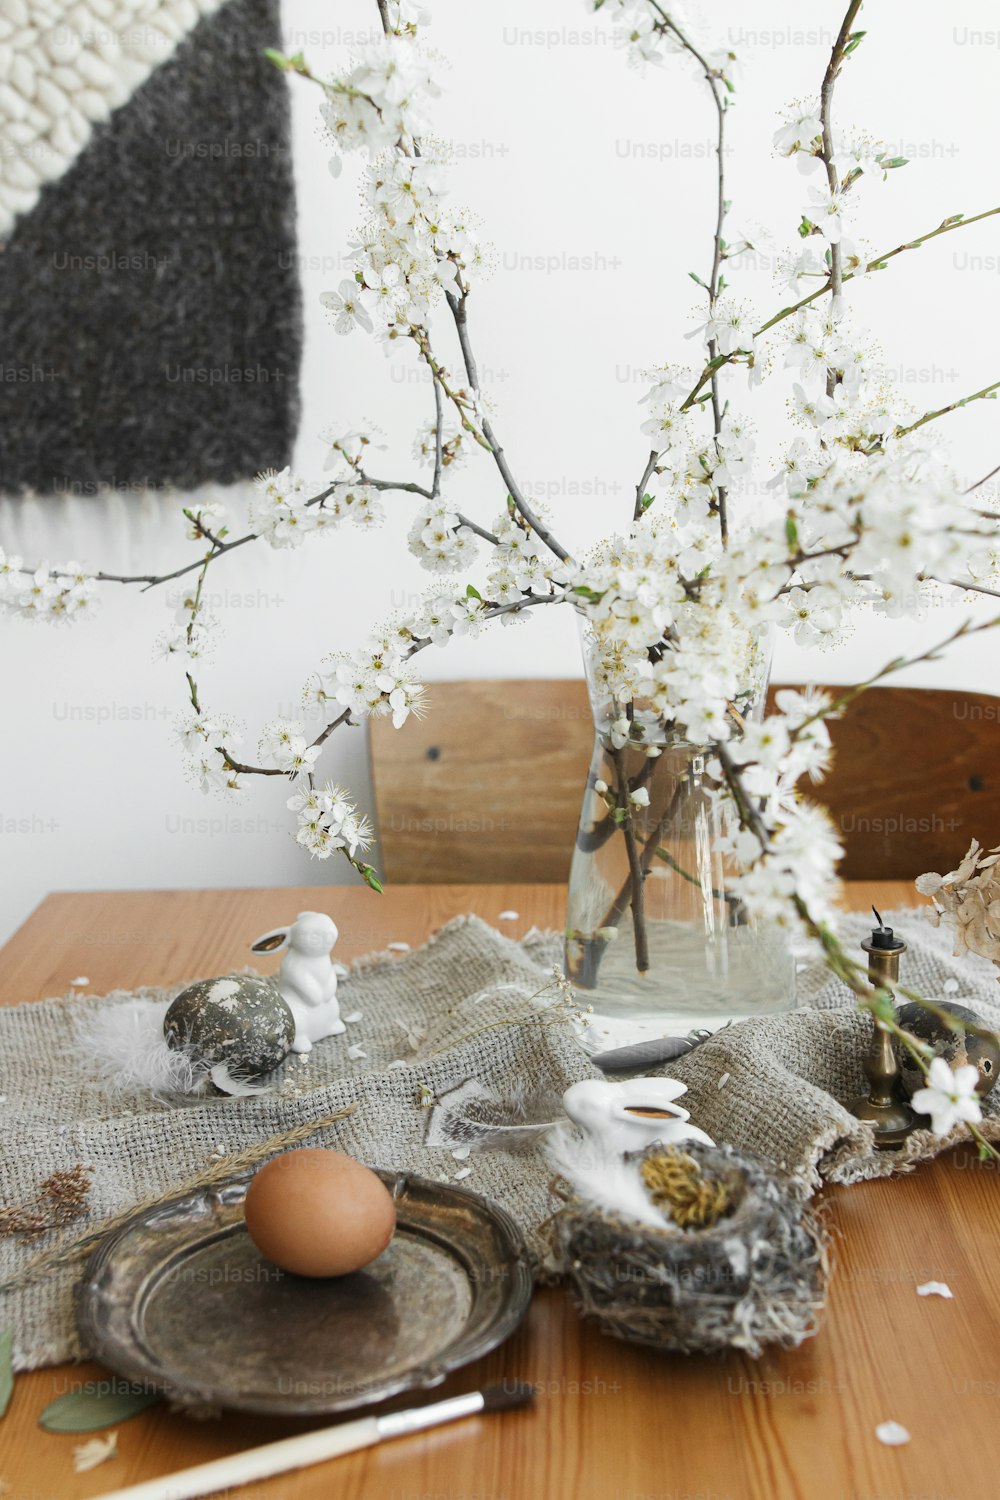 Joyeuses Pâques ! Oeufs de Pâques naturels, lapins blancs, plumes, nid et branche de cerisier fleuri avec des pétales sur serviette en lin rustique sur la table. Espace pour le texte. Décor rural respectueux de l’environnement